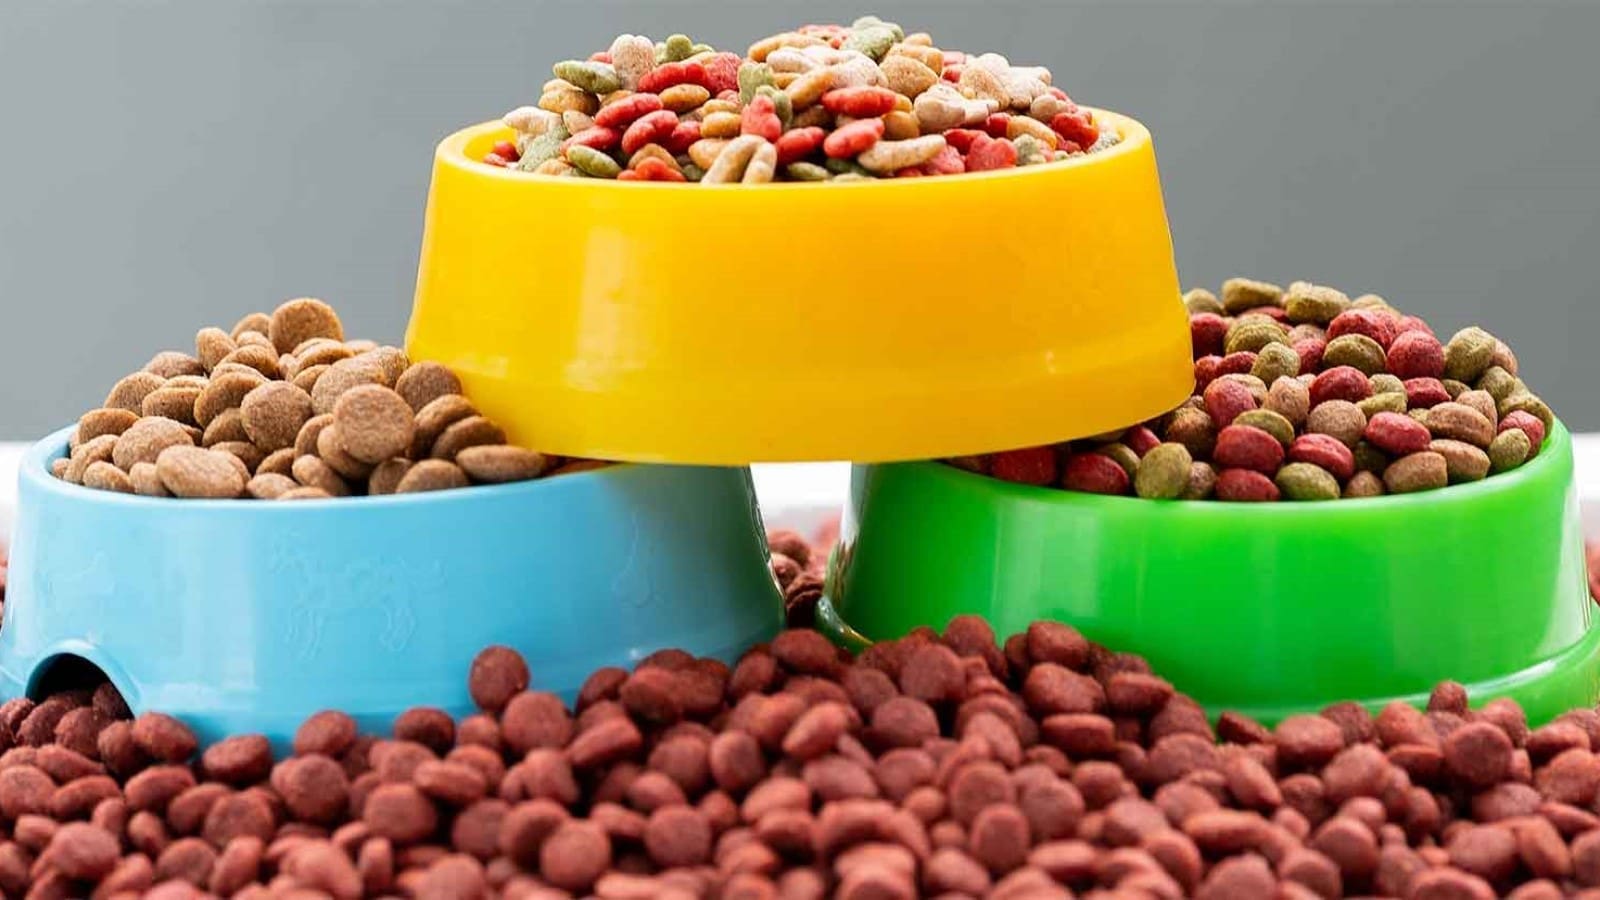 NASDA supports AAFCO’s pet food label modernization efforts